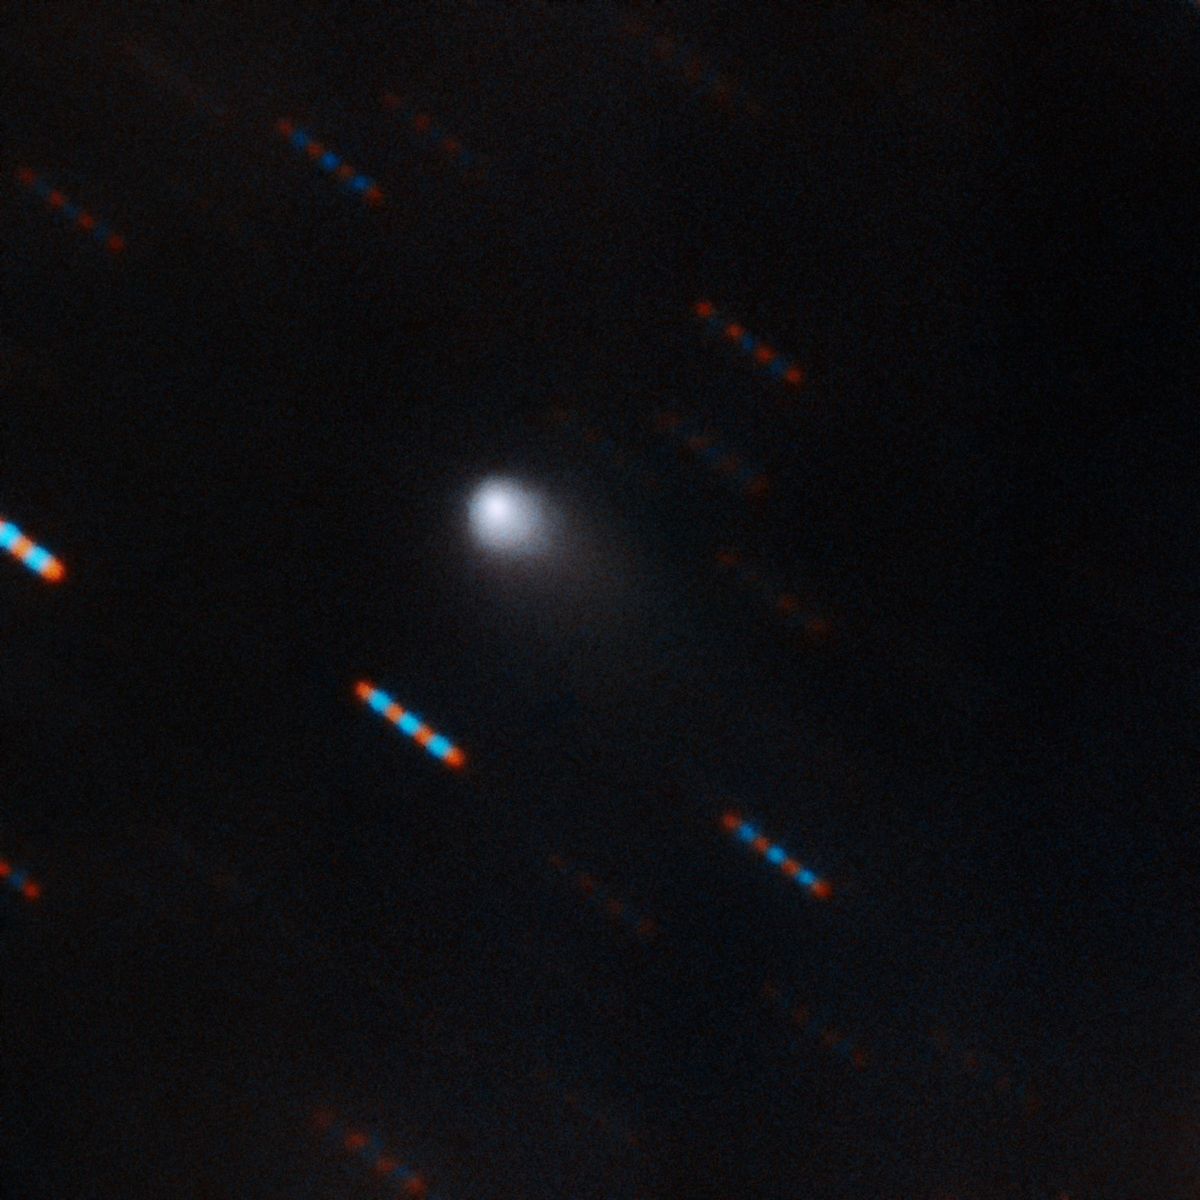 Onlangs maakte het Gemini Observatory op Hawa deze composietopname in twee kleuren van 2IBorisov het tweede interstellaire hemellichaam dat is waargenomen tijdens een bezoek aan ons zonnestelsel De blauwe en rode streepjes zijn afbeeldingen van sterren op de achtergrond die door de beweging van de komeet zijn uitgesmeerd